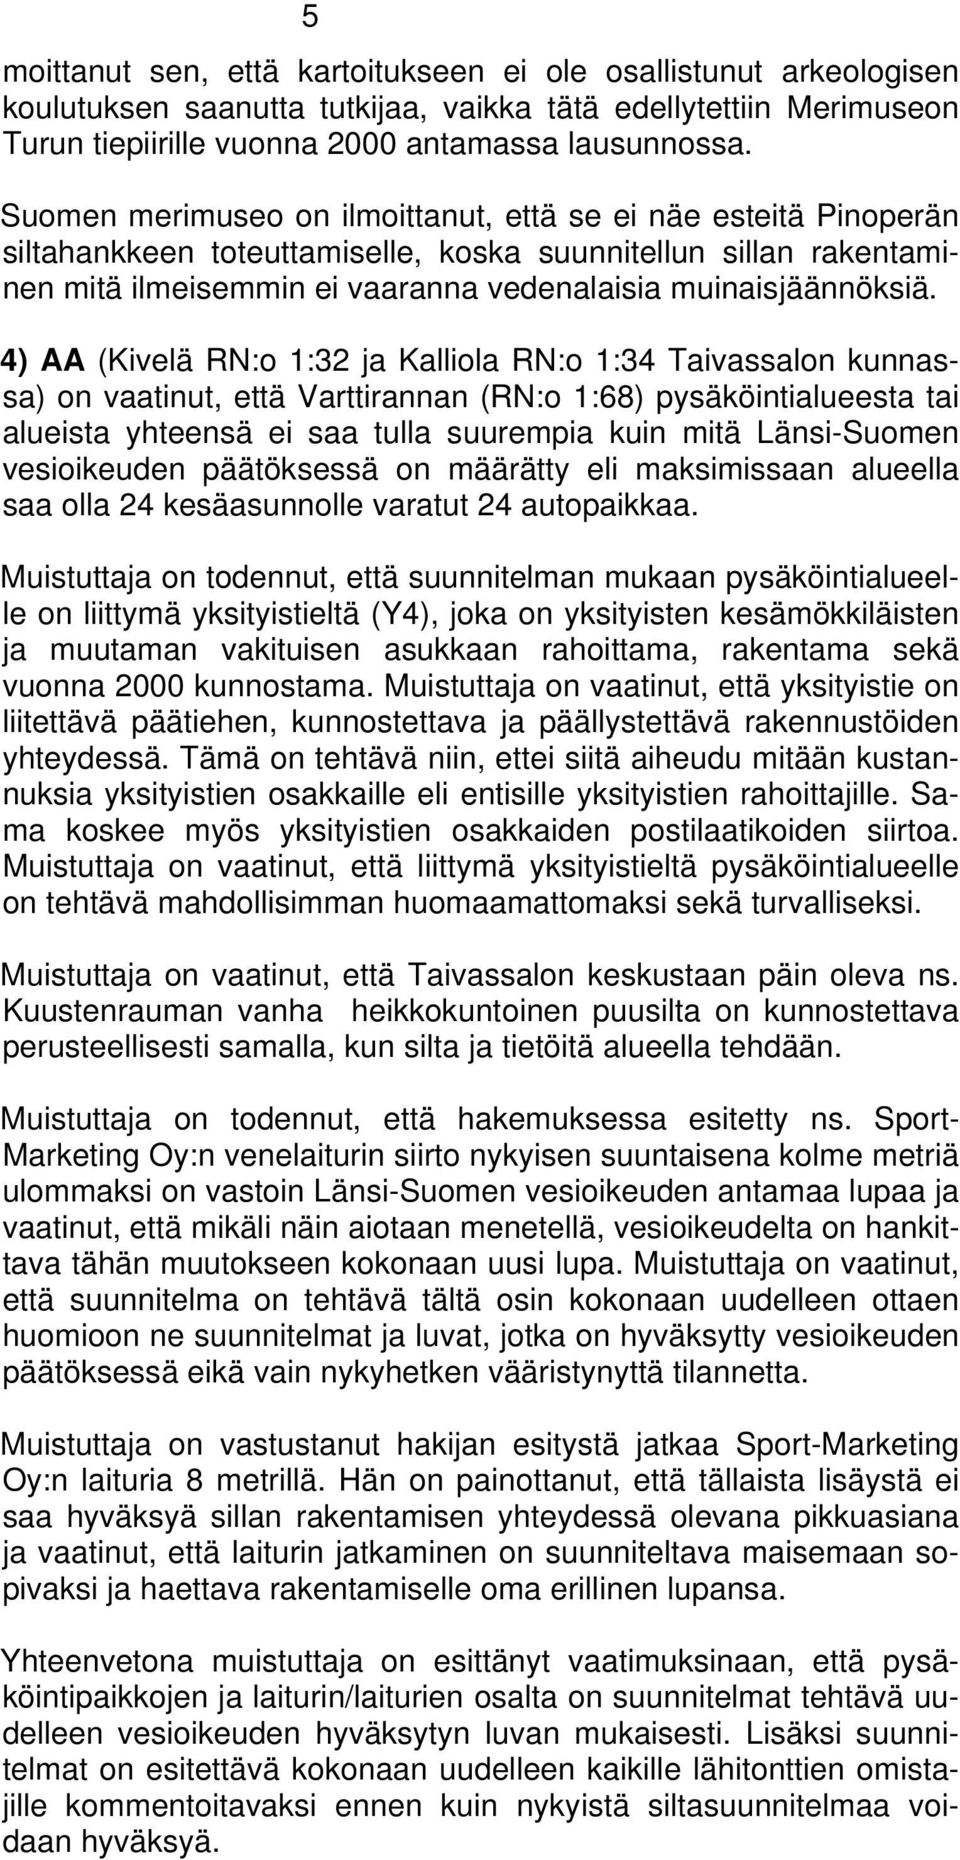 4) AA (Kivelä RN:o 1:32 ja Kalliola RN:o 1:34 Taivassalon kunnassa) on vaatinut, että Varttirannan (RN:o 1:68) pysäköintialueesta tai alueista yhteensä ei saa tulla suurempia kuin mitä Länsi-Suomen